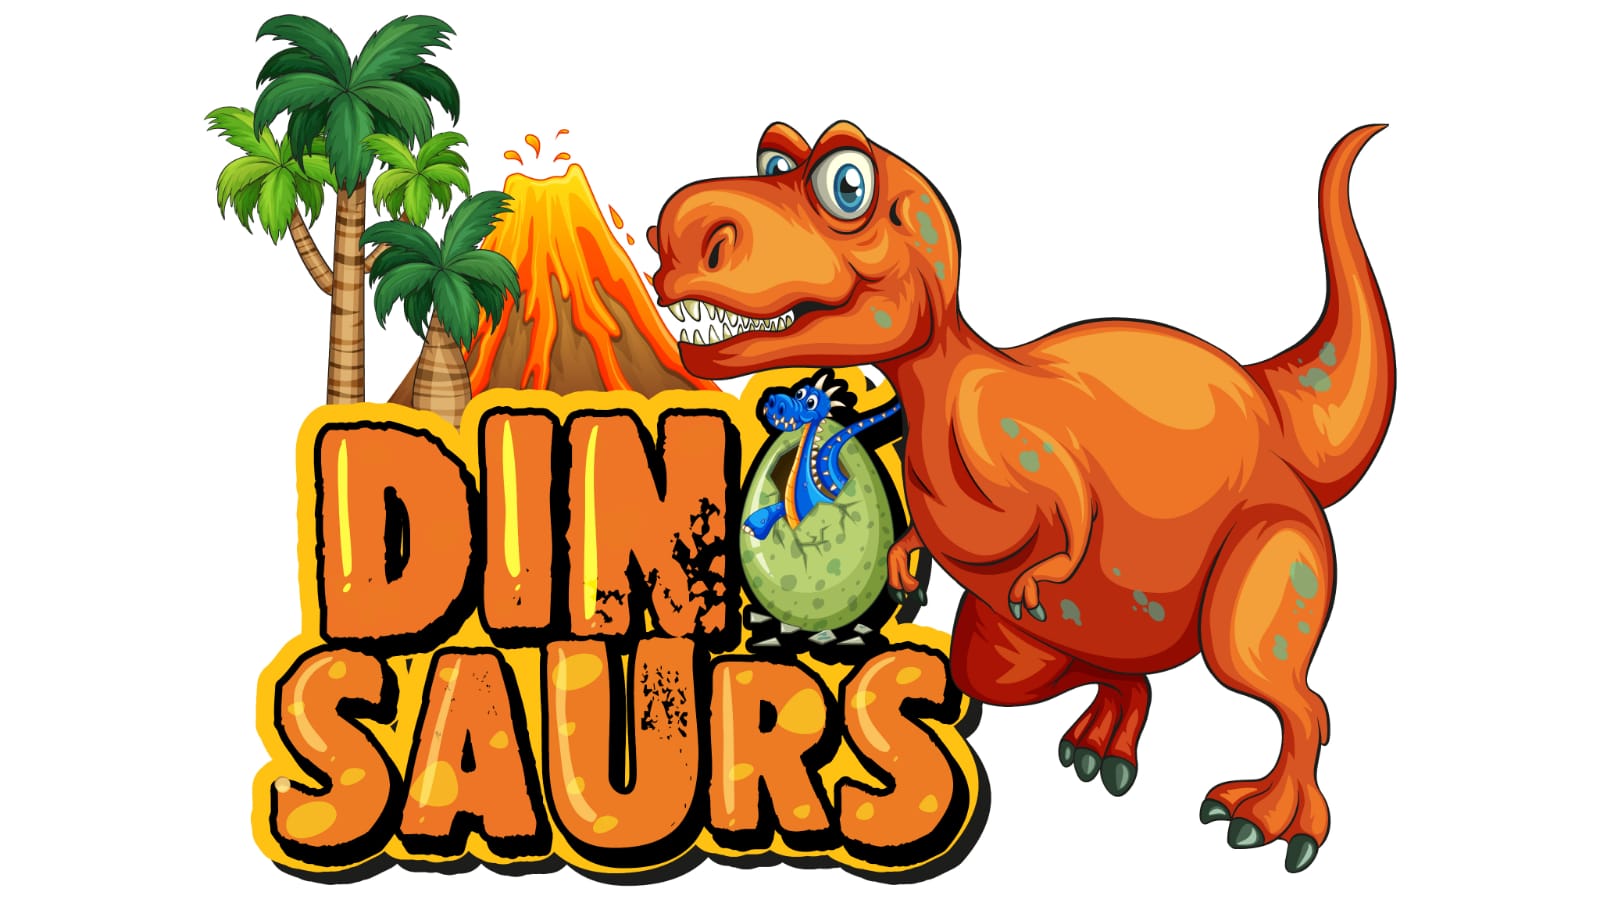 Rekomendasi 5 Game Android Tema Dinosaurus Seru dan Menegangkan